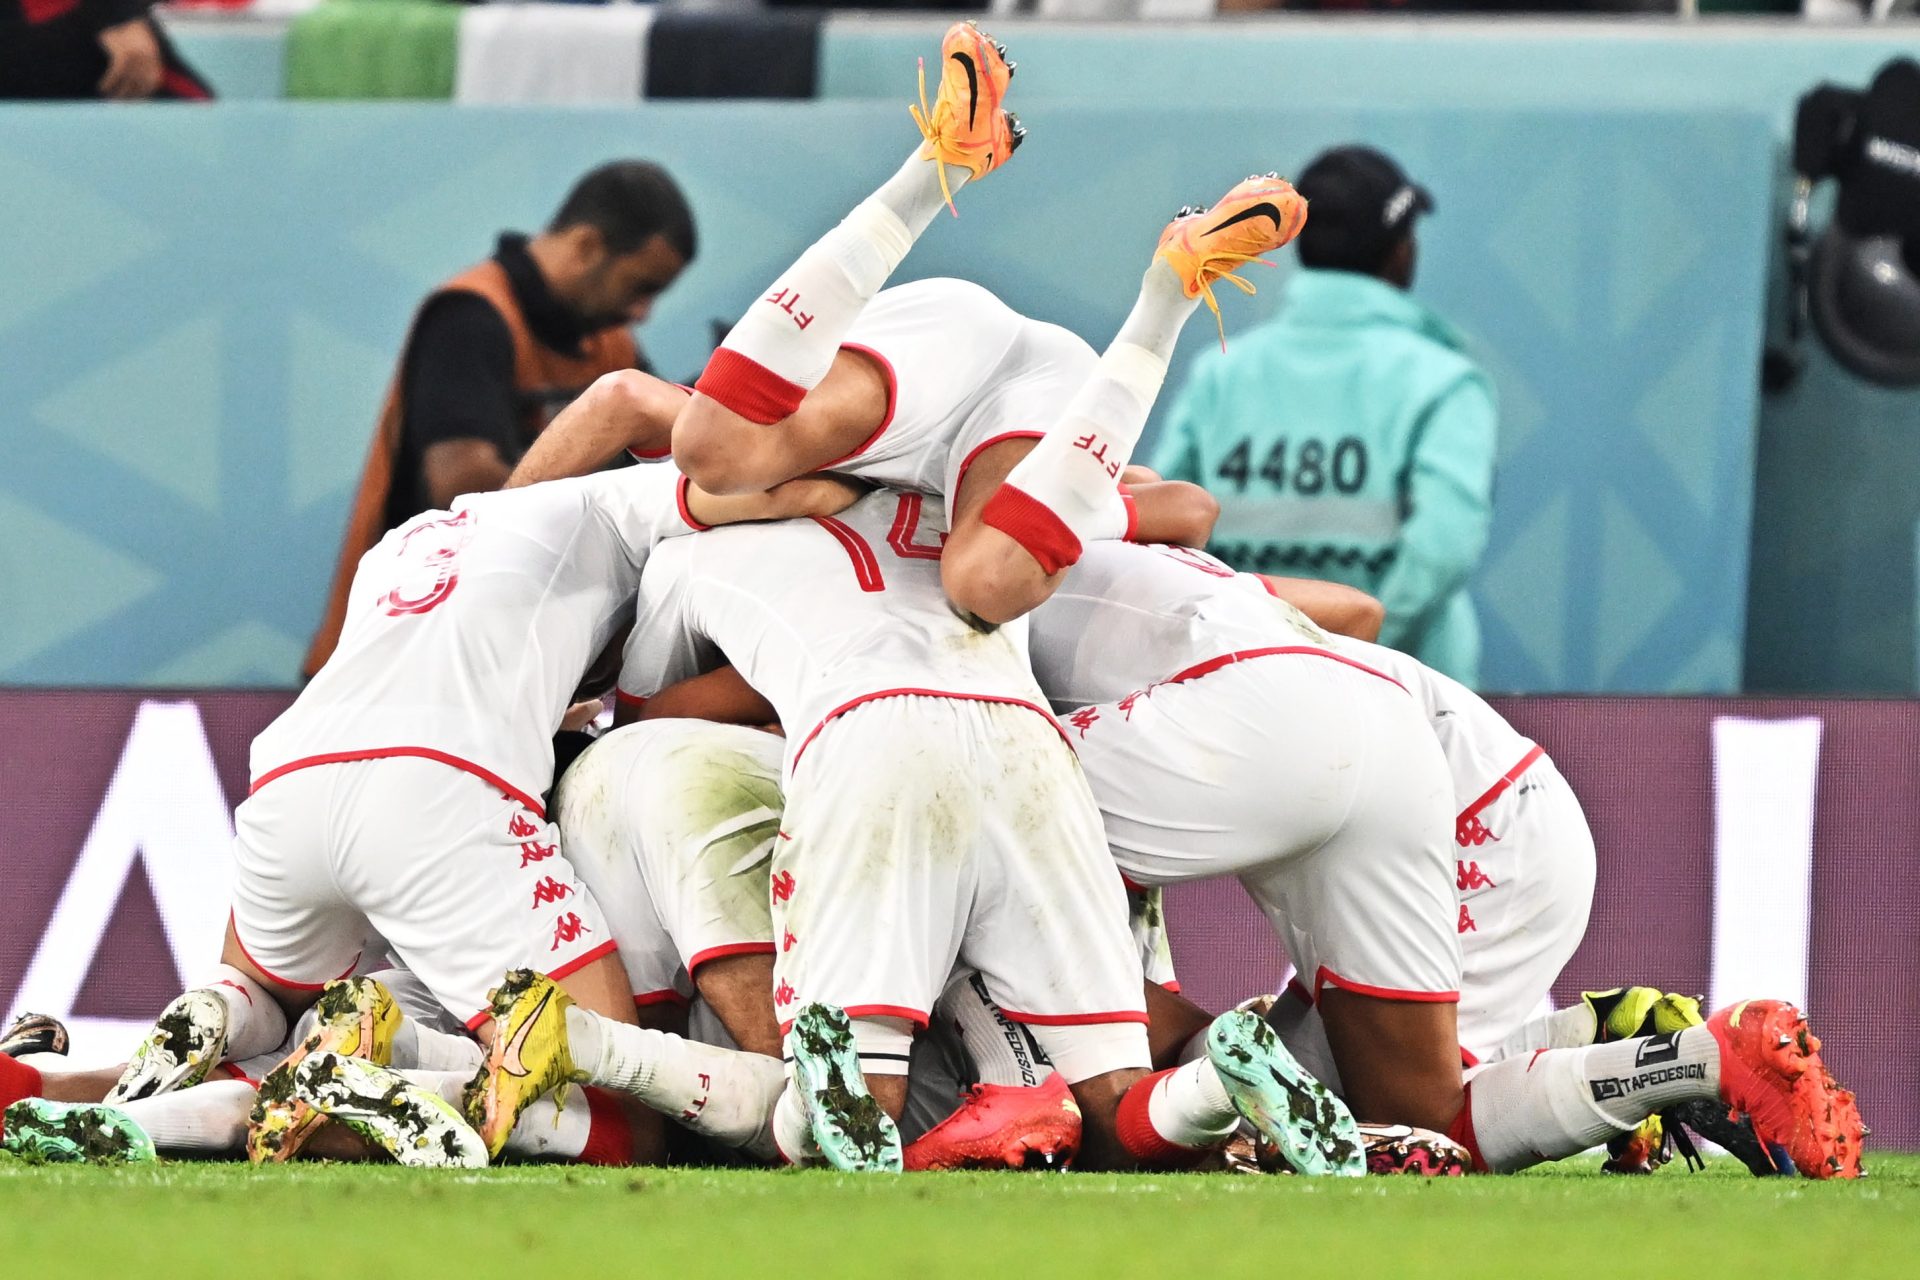 La selección de Túnez celebra el tanto marcado.